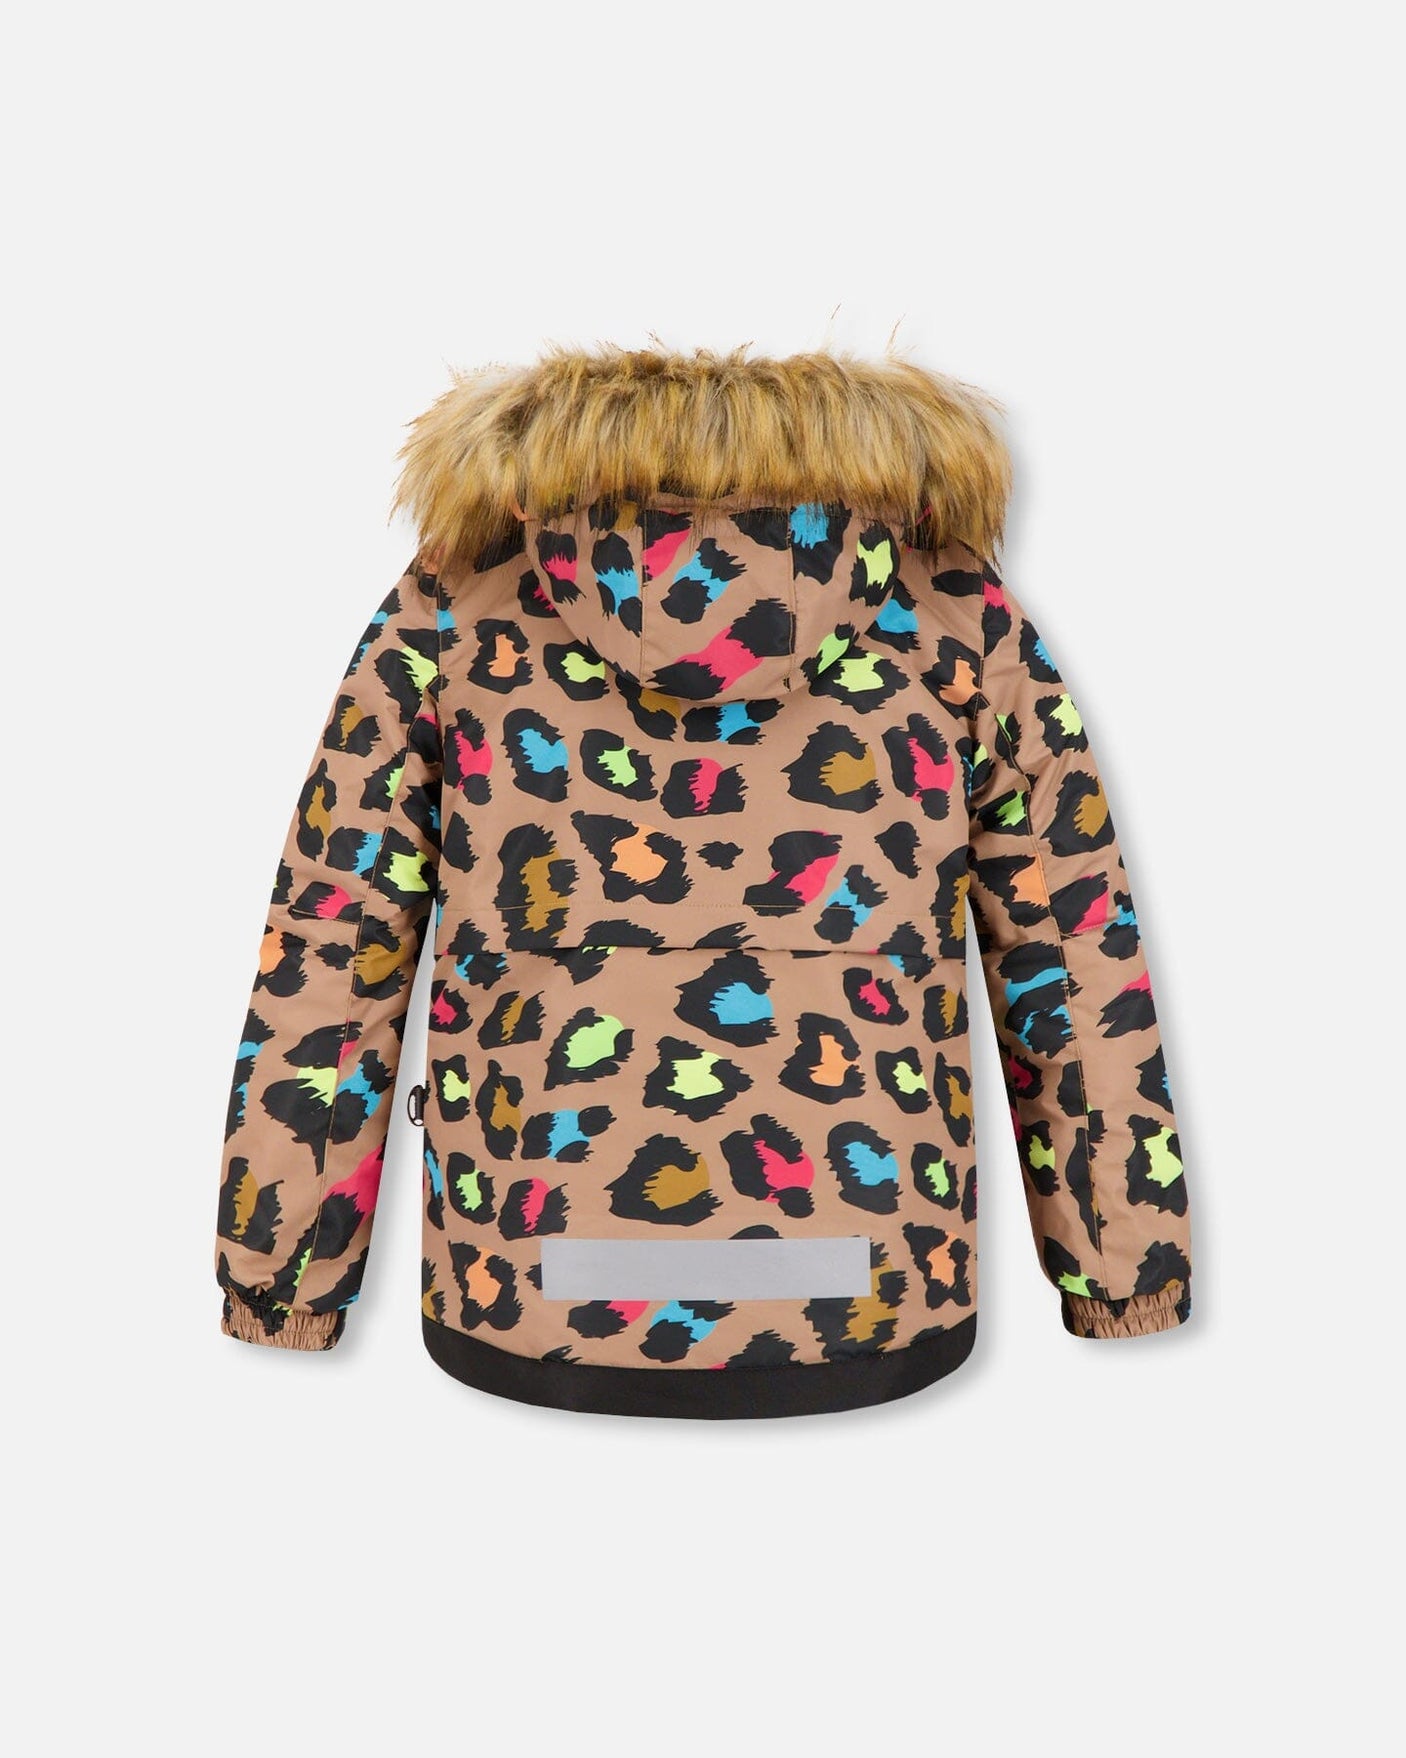 Two Piece Snowsuit Multicolor Leopard Print - Jenni Kidz